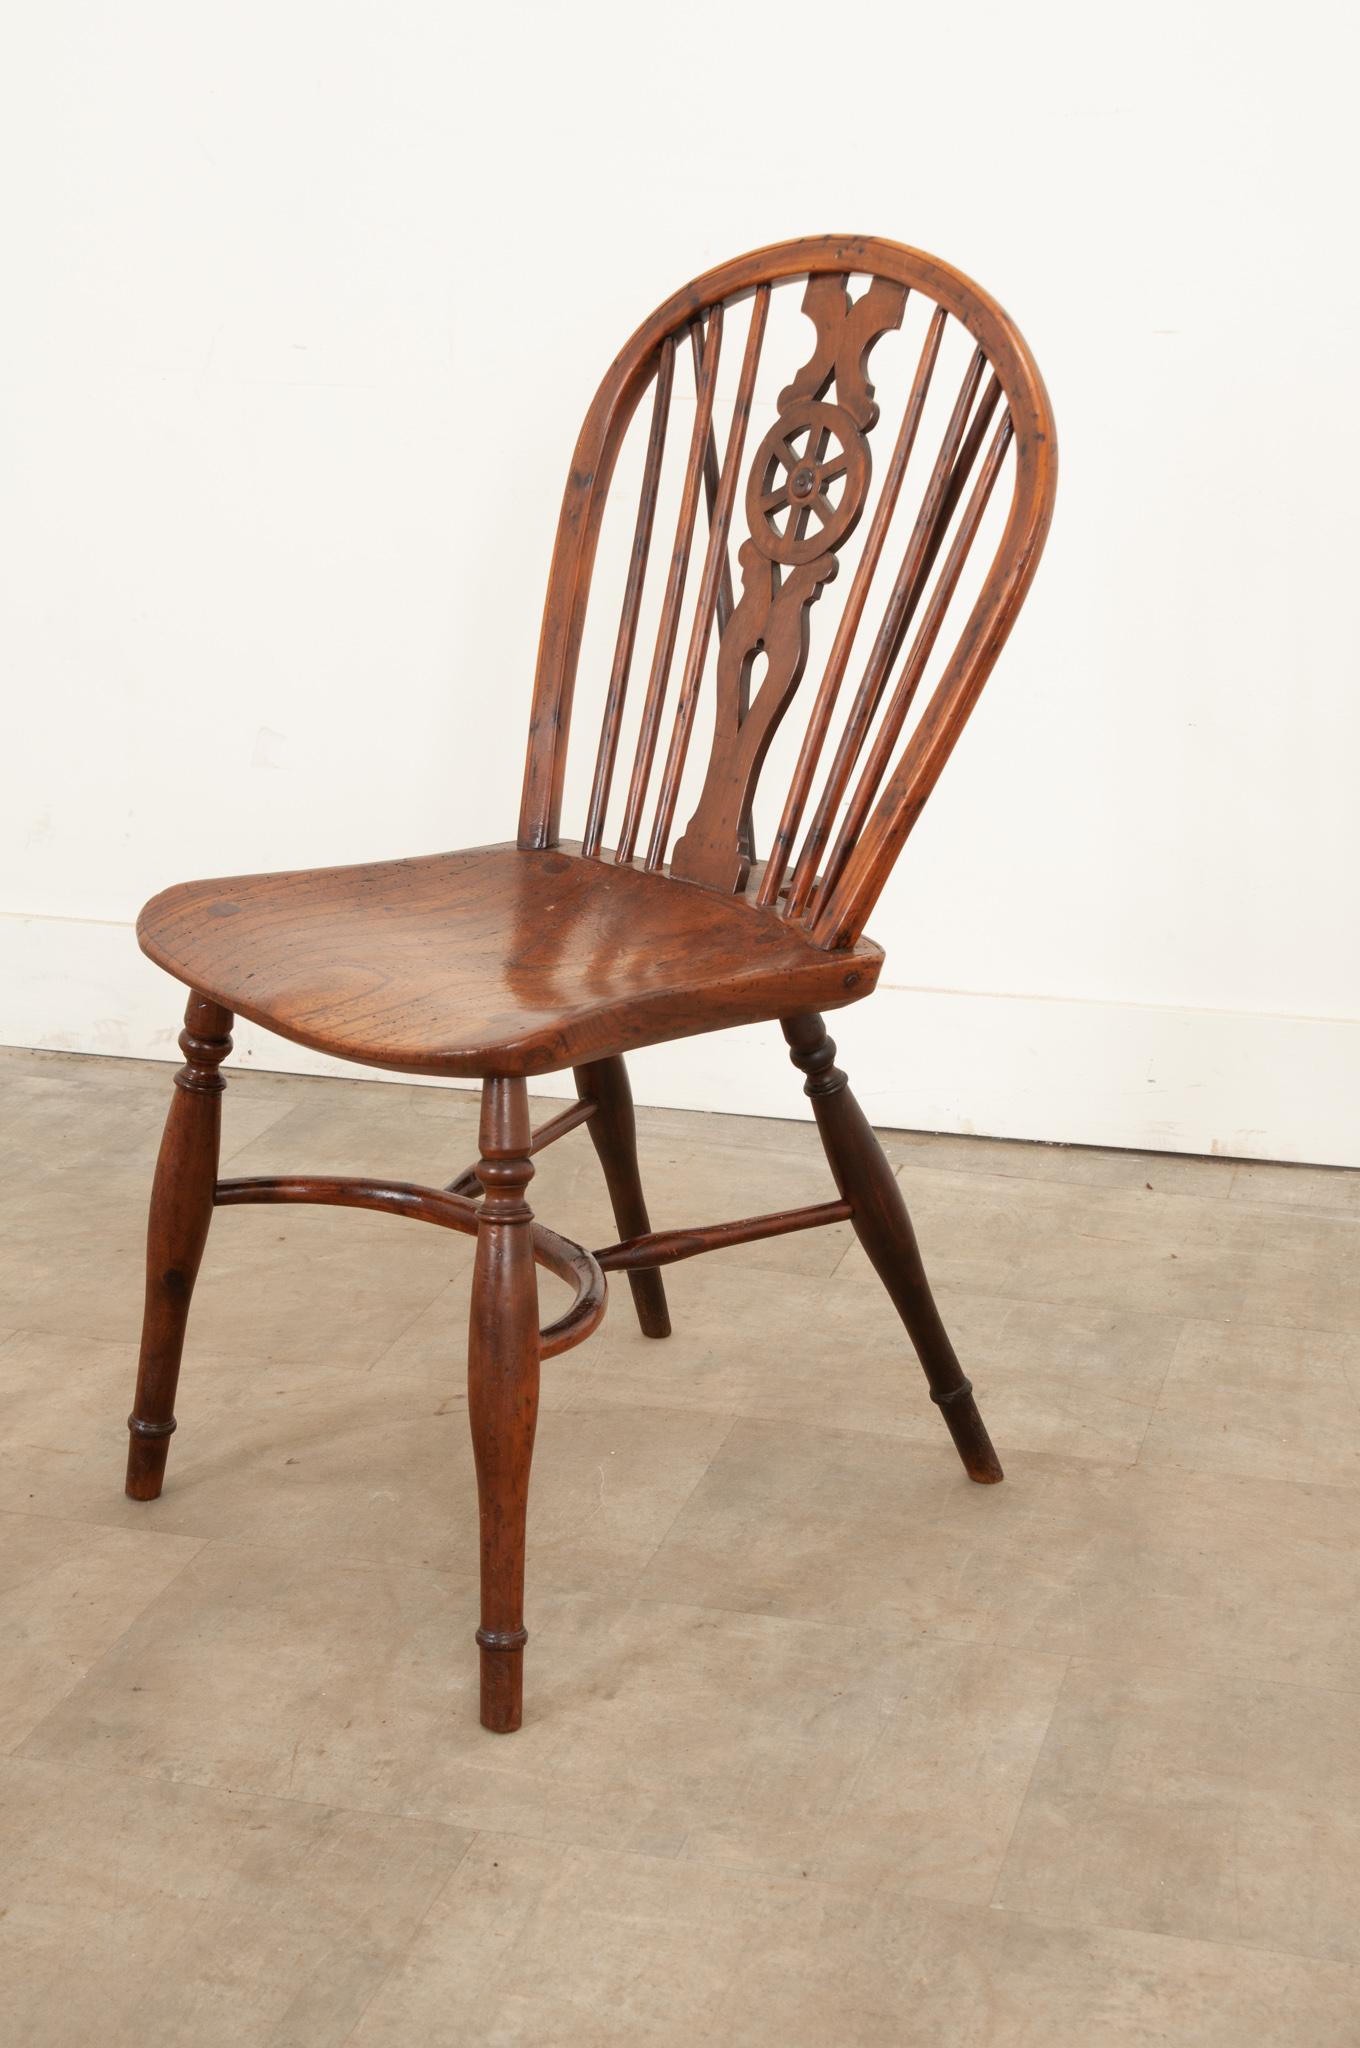  Ein hübscher Windsor-Stuhl aus Eiche aus dem frühen 19. Dieser um 1810 handgefertigte, attraktive Stuhl hat eine reifenförmige Rückenlehne mit einem wunderschönen, durchbrochenen Radrücken über einem gut geformten Sitz und eleganten, gedrechselten